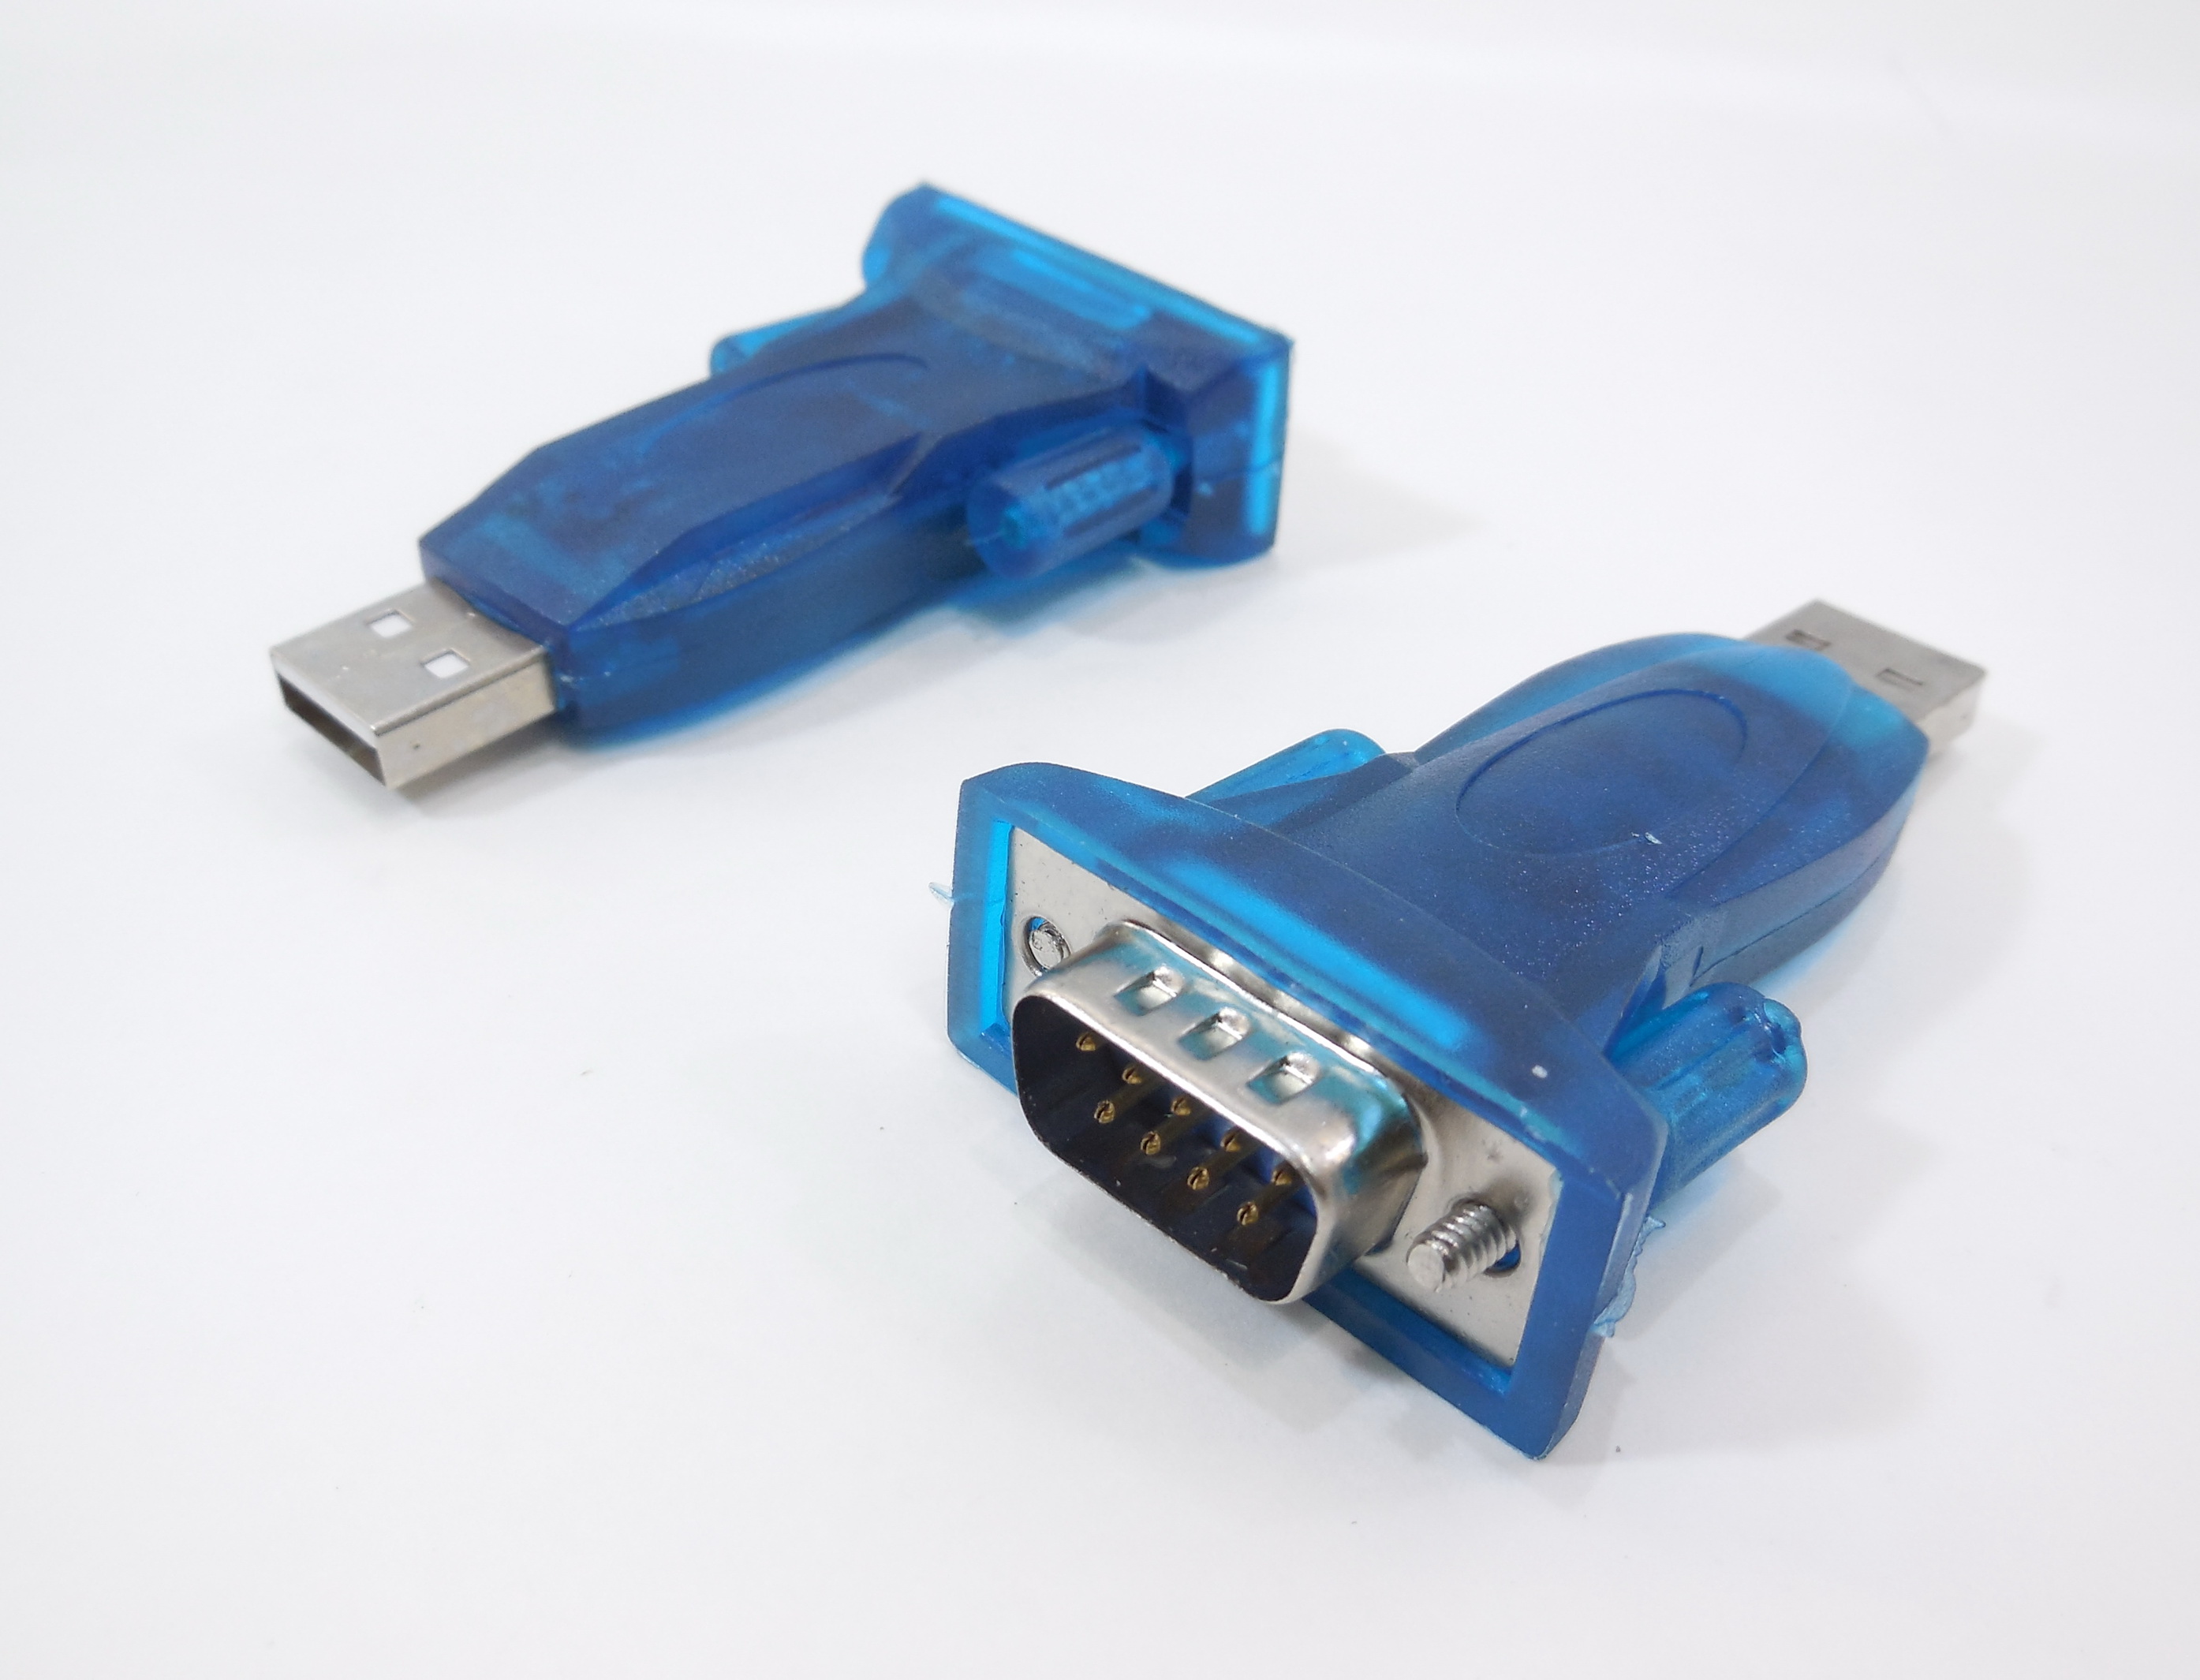  USB COM компактный корпус